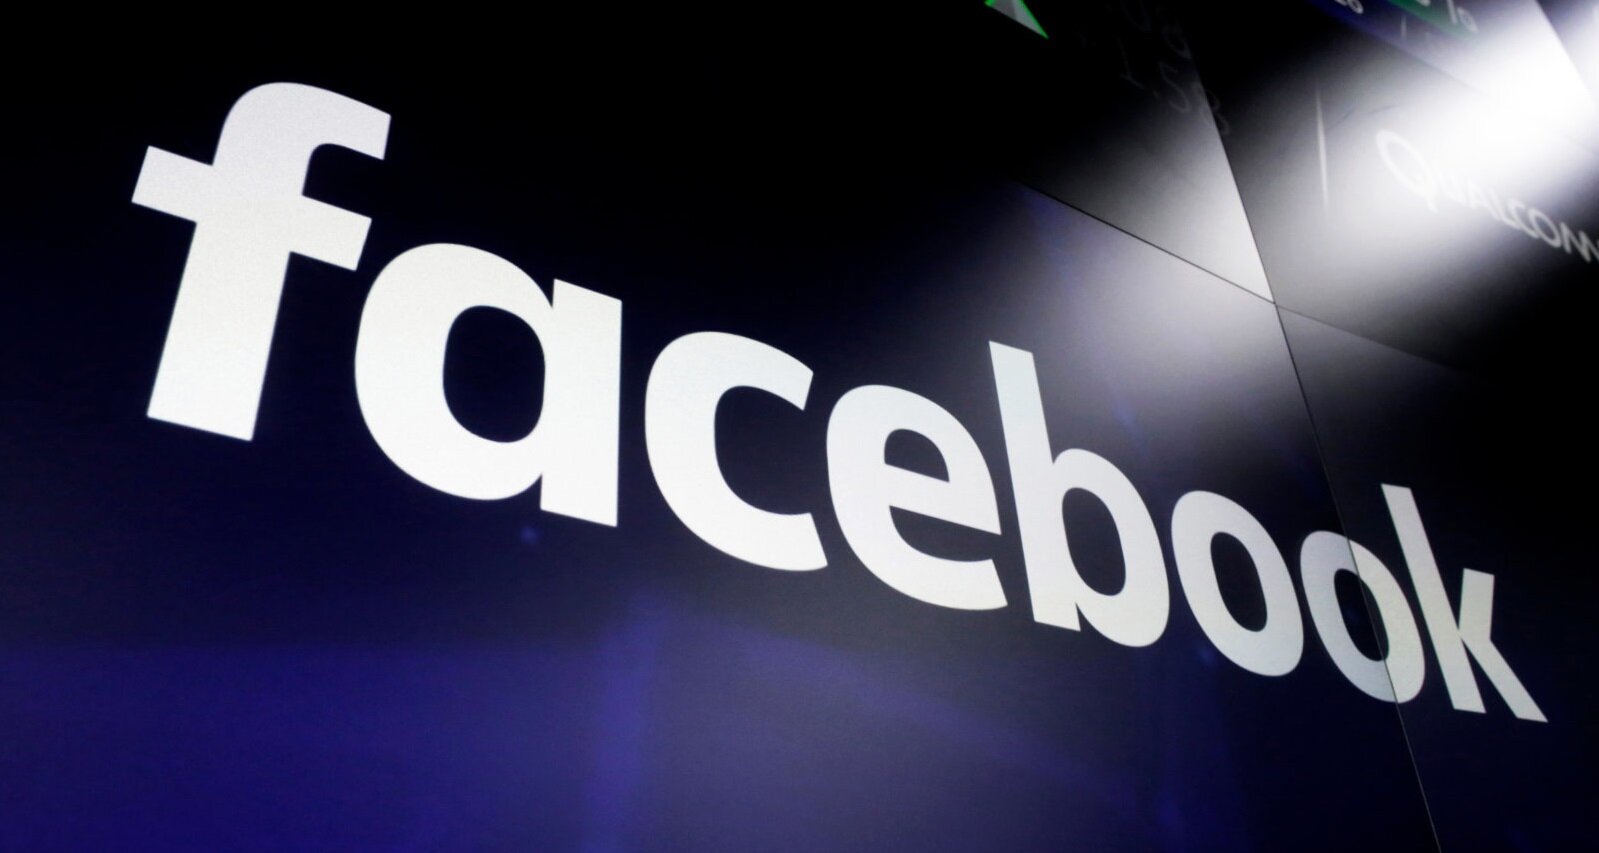 Το Facebook θα κατατάσσει τα σχόλια για να δώσει στις συζητήσεις περισσότερο νόημα και ουσία